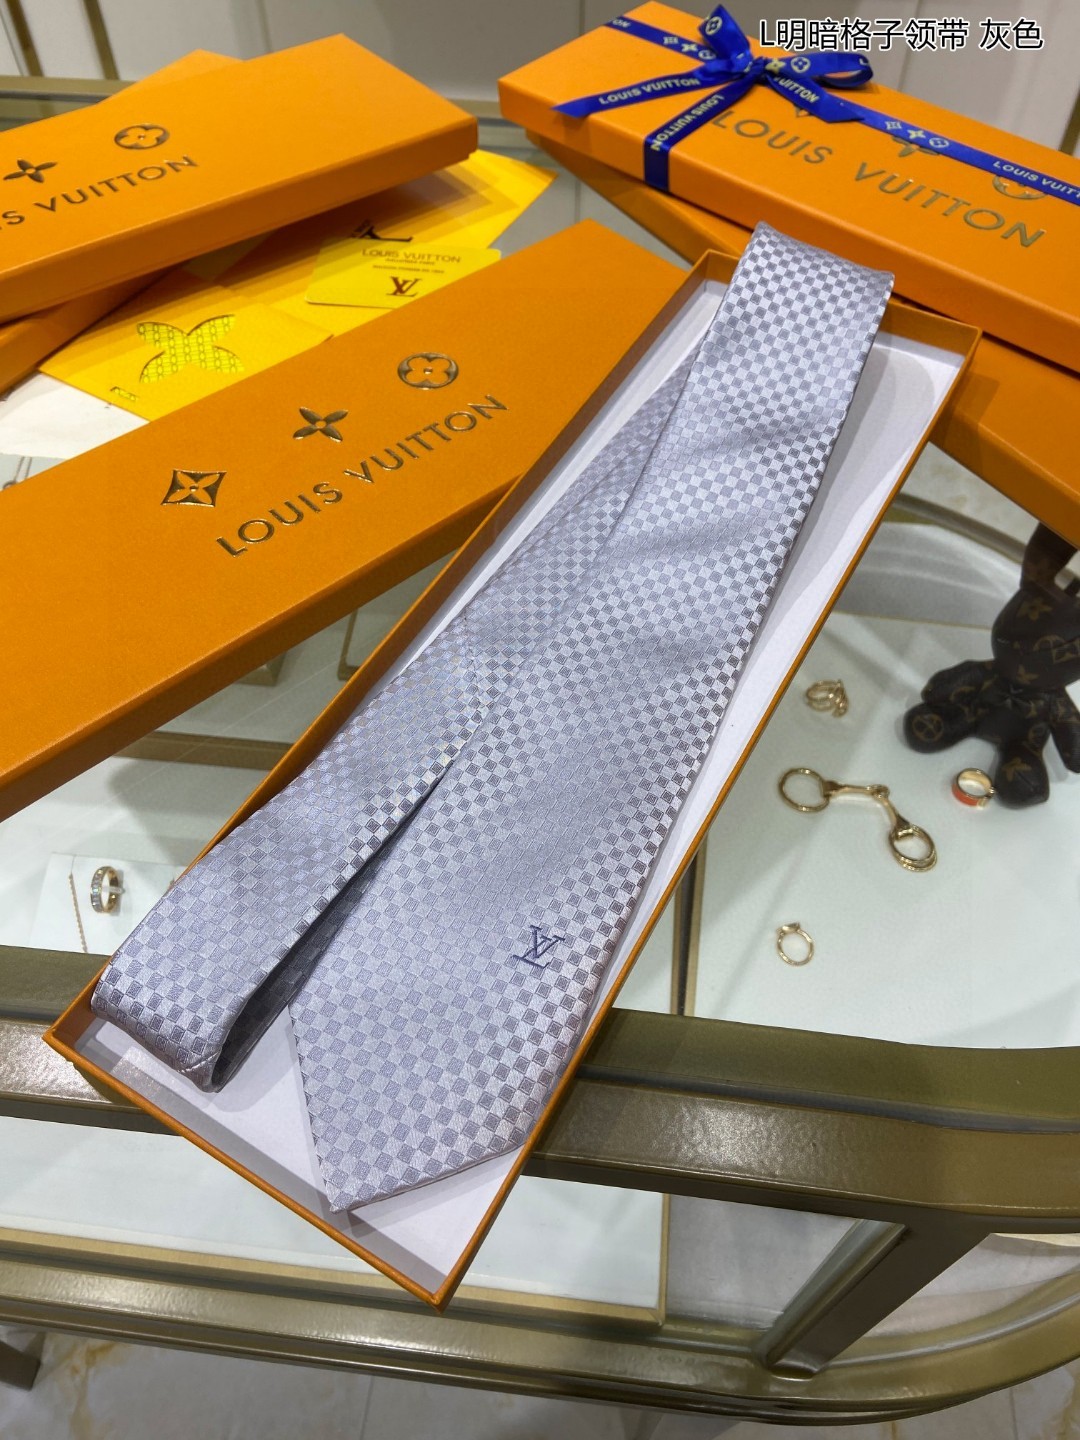 专柜同步男士领带系列L明暗格子领带稀